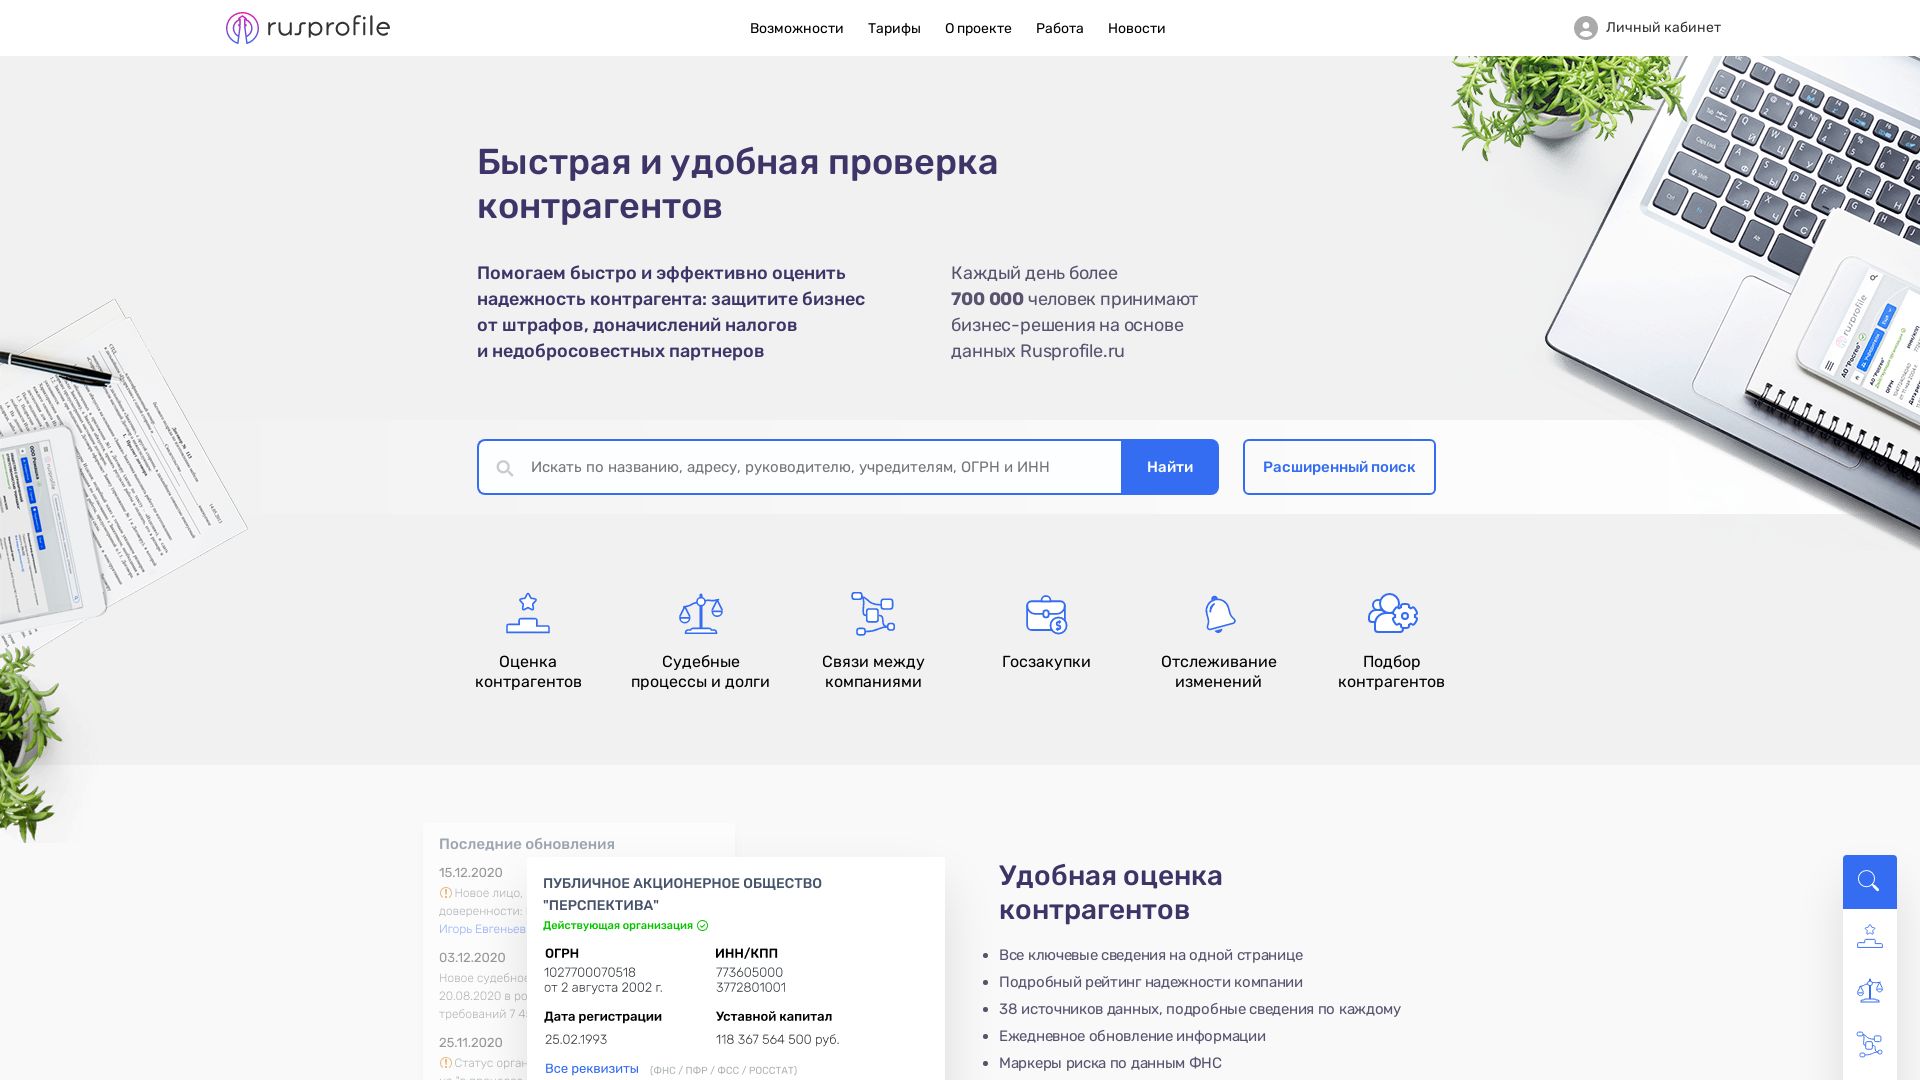 État du site web rusprofile.ru est   EN LIGNE